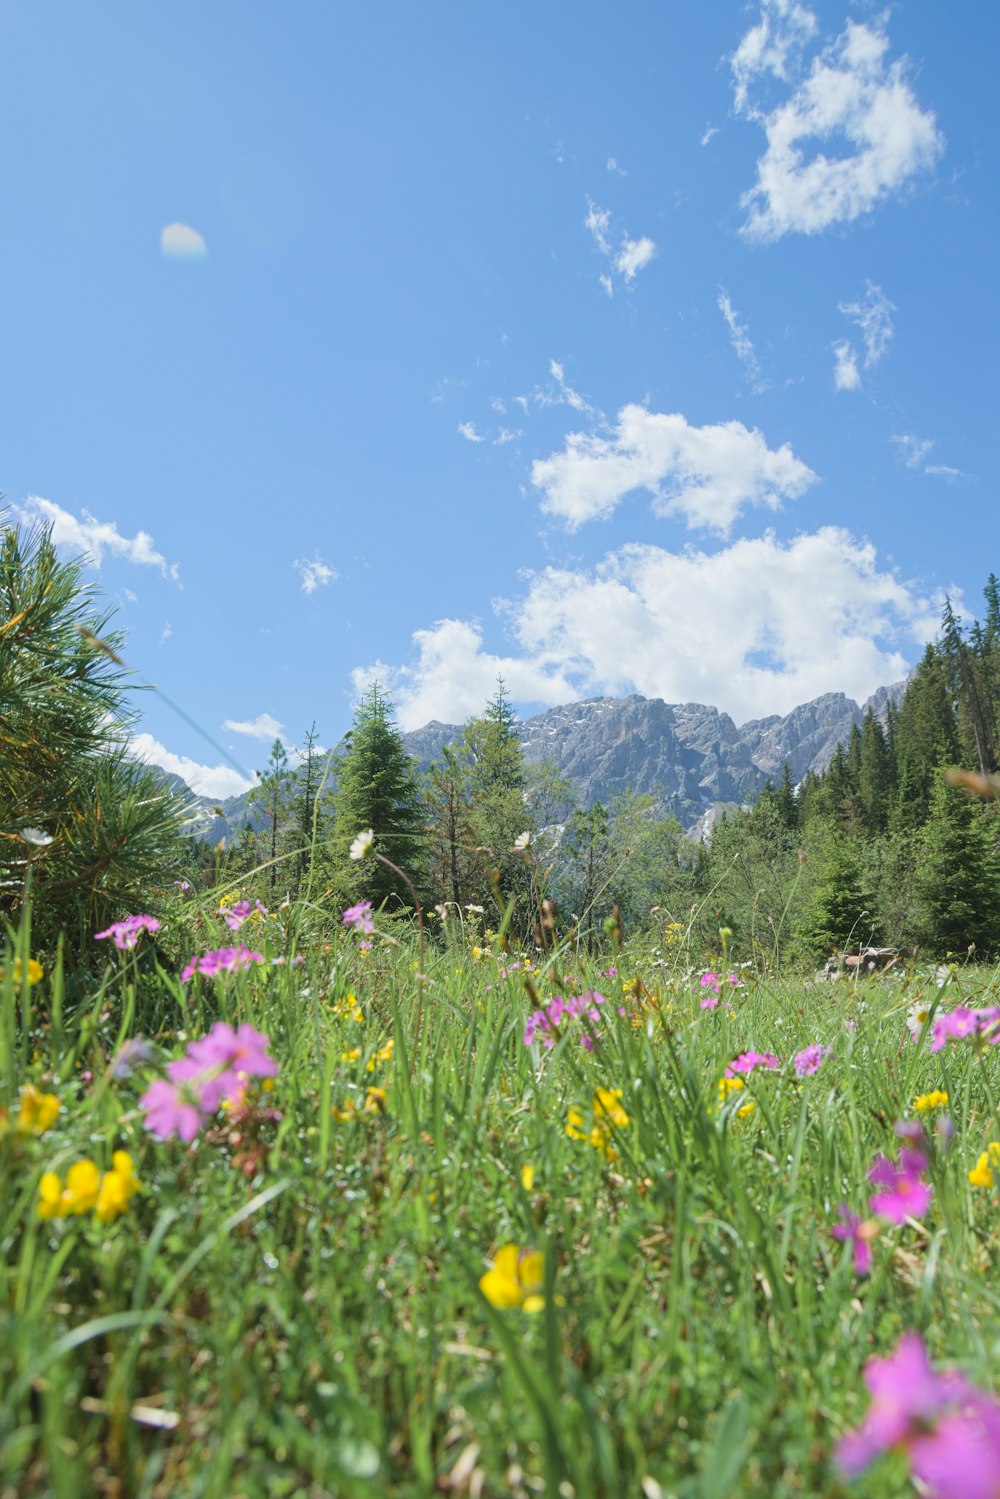 campo di fiori viola vicino ad alberi verdi e montagne sotto il cielo blu durante il giorno